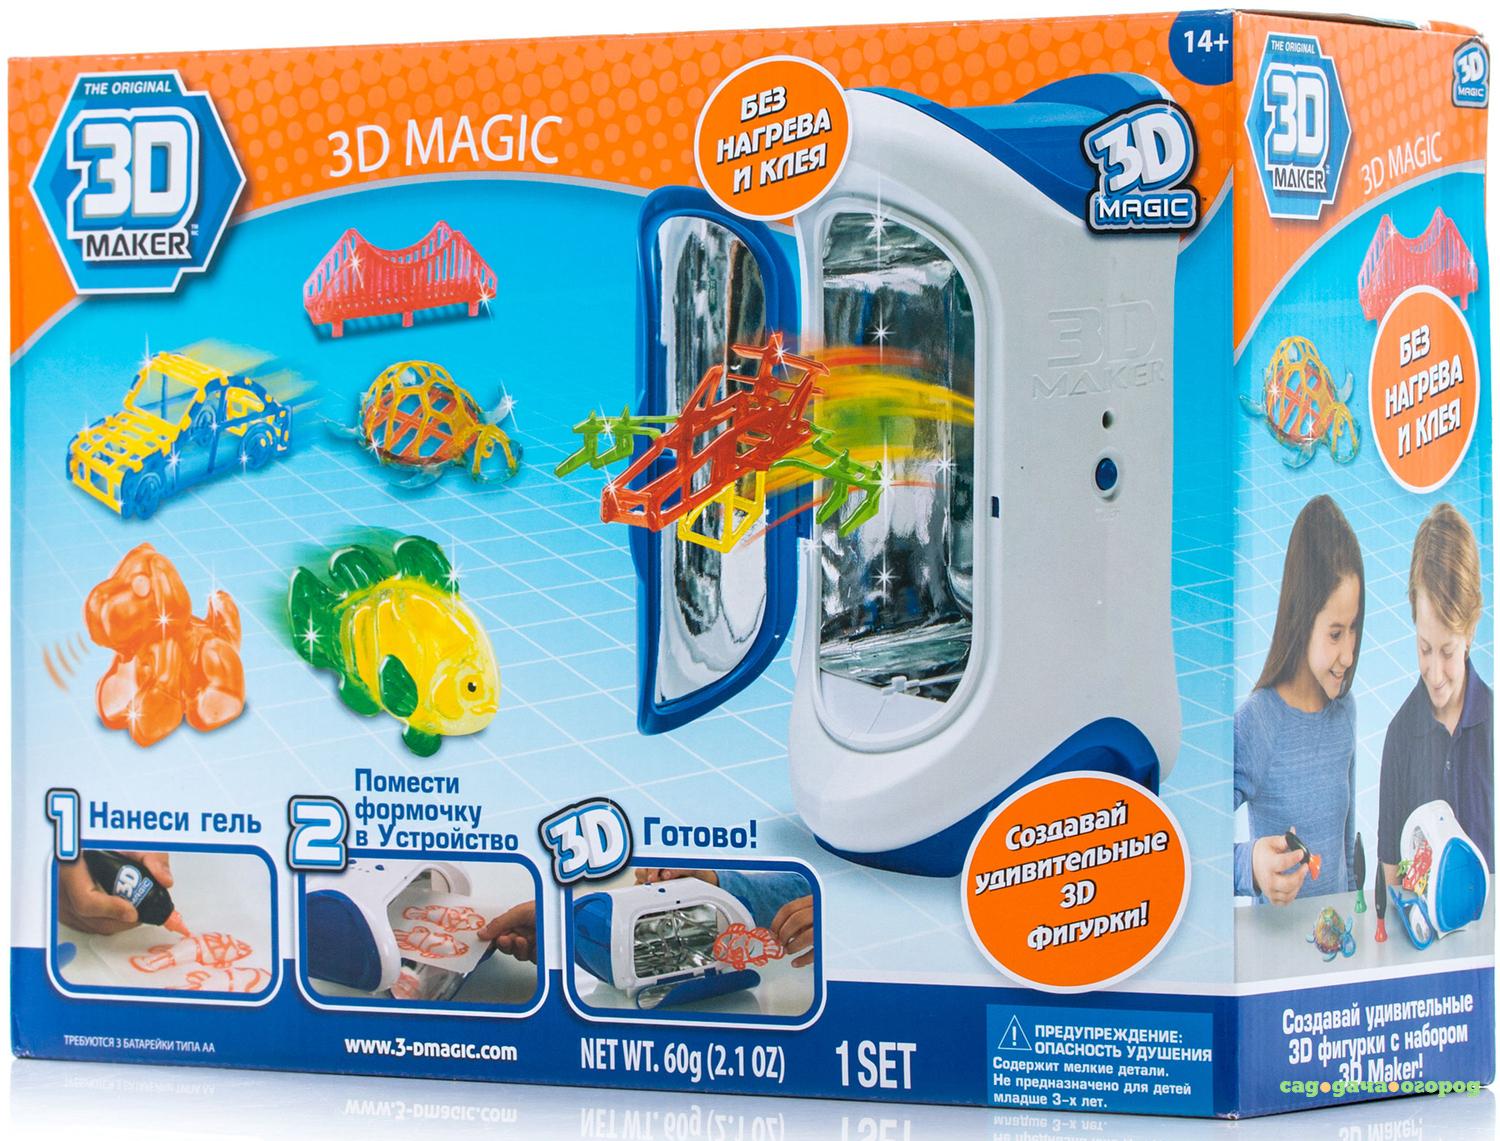 Magic maker. Набор для создания объемных моделей 3d. 3 Д принтер детский 3 Magic. Мэджик набор магии. 3d maker гель.